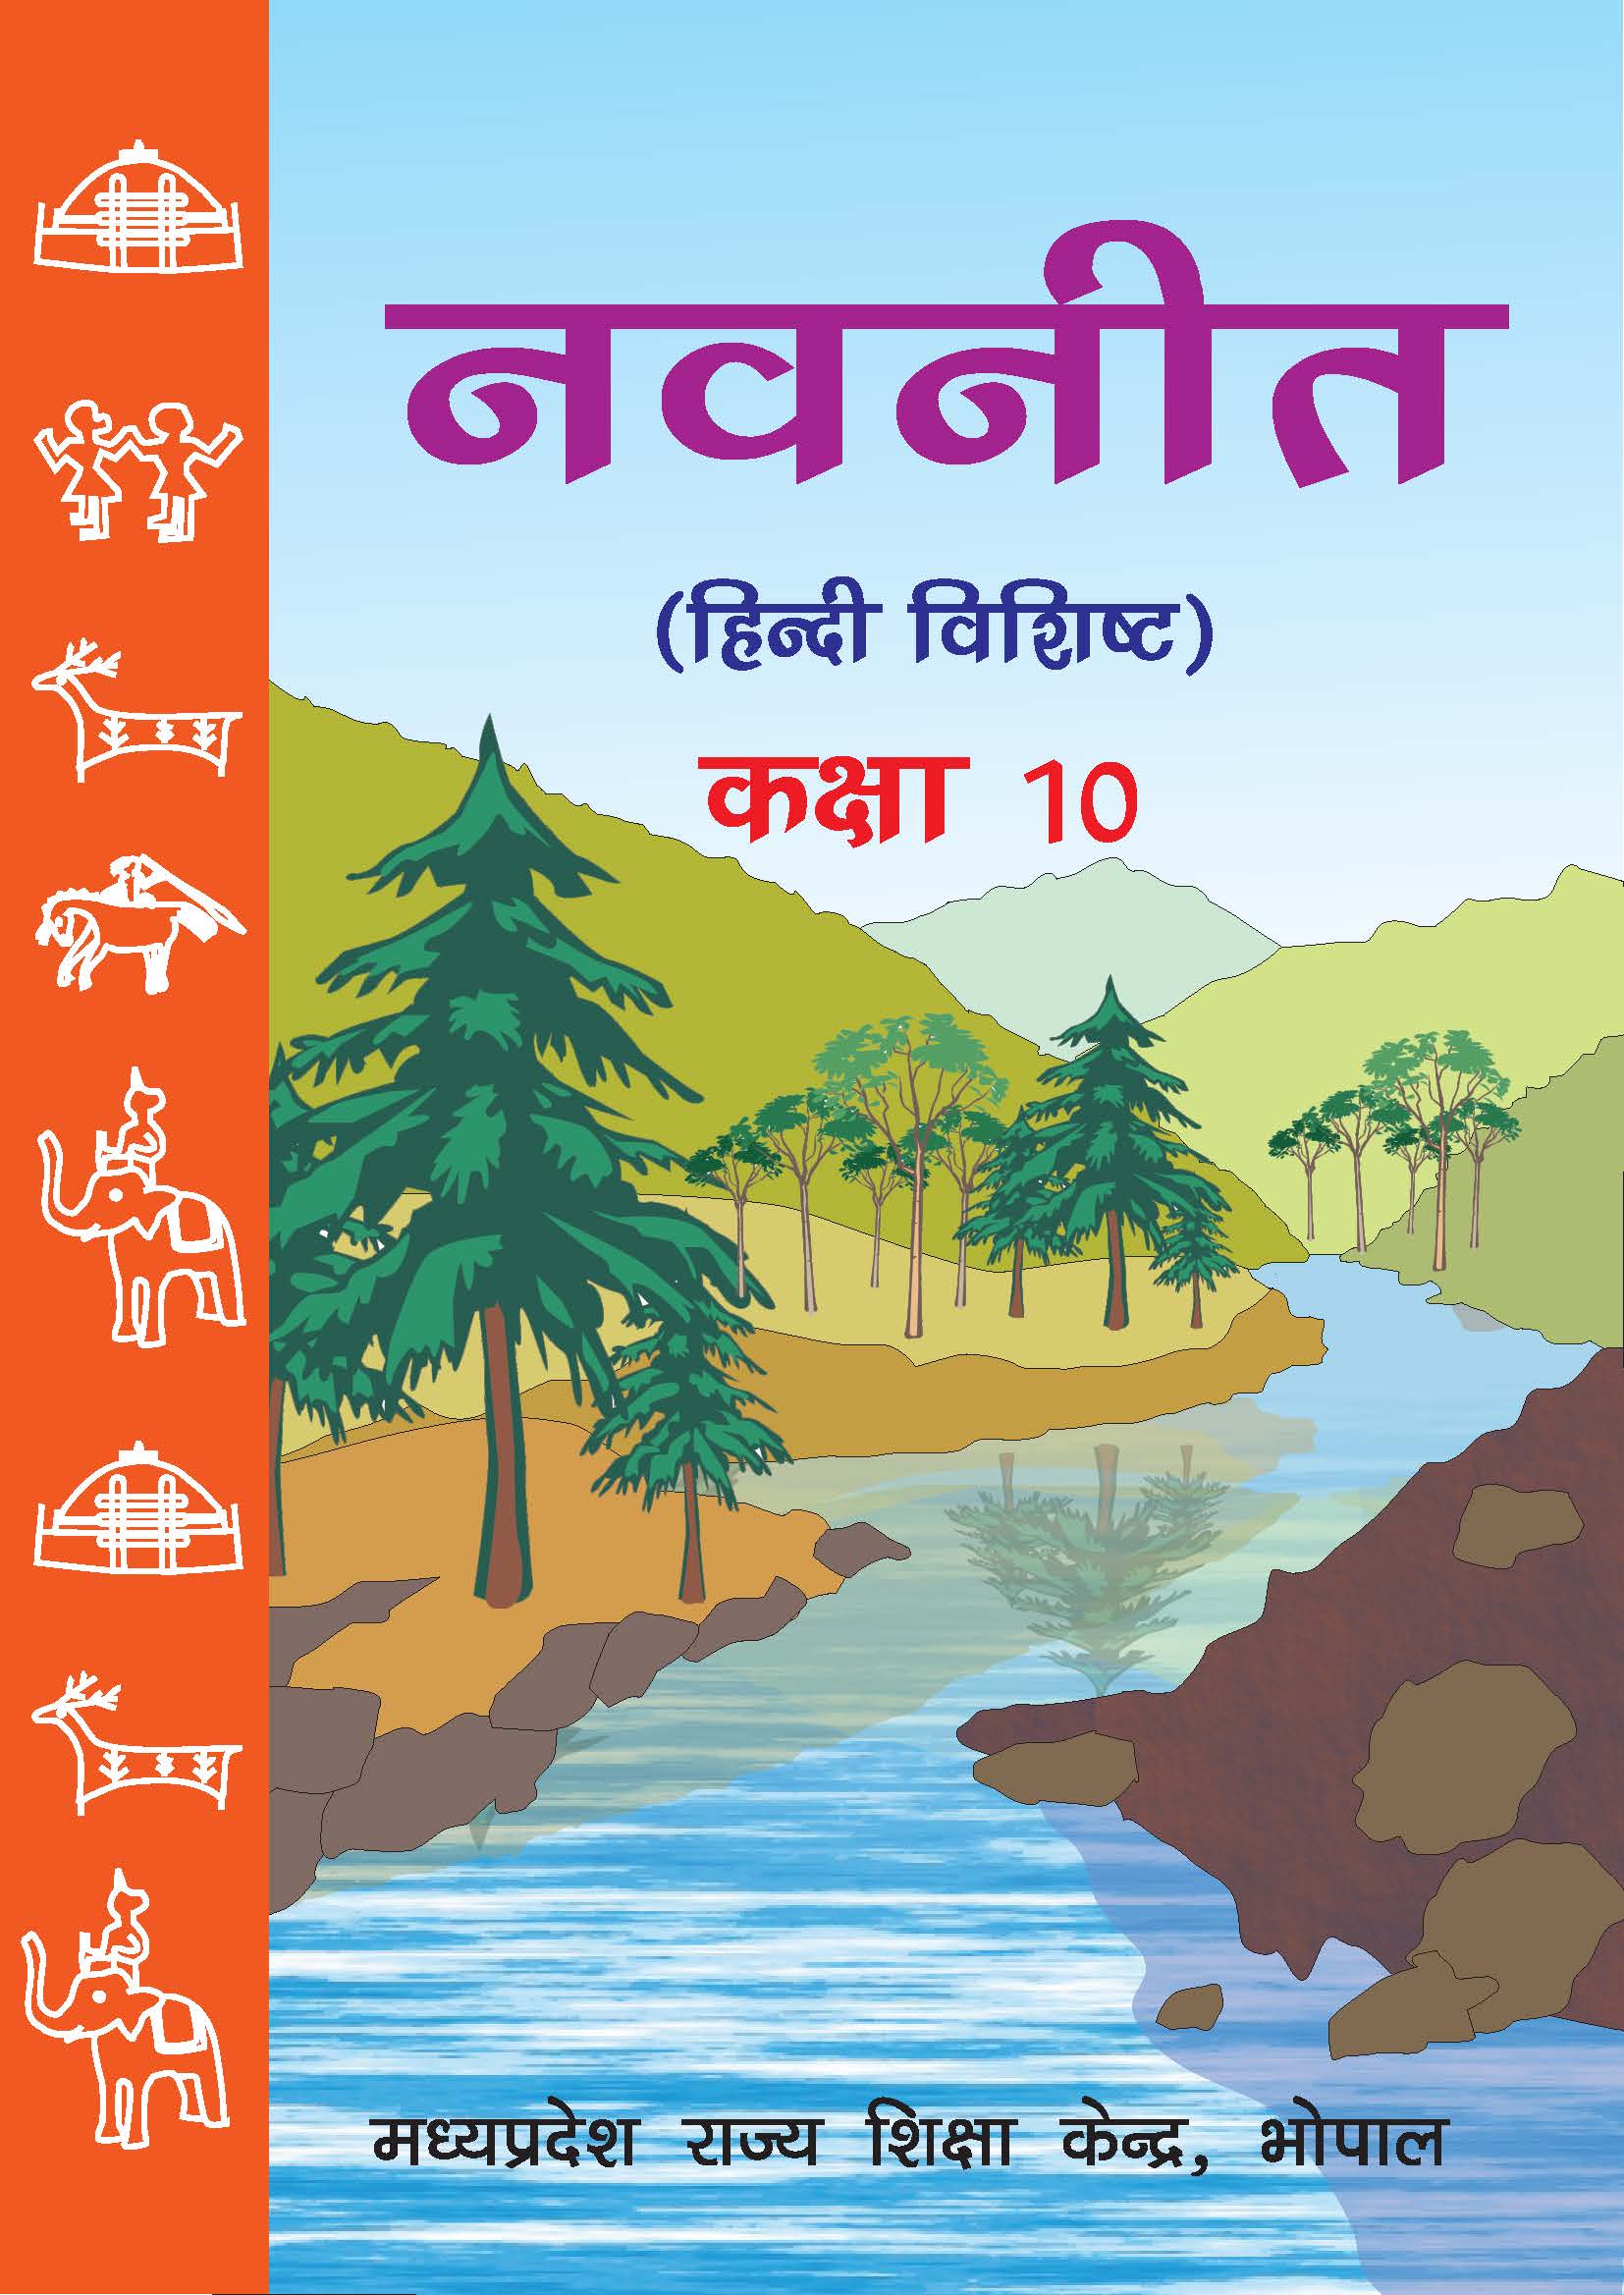 नवनीत (हिन्दी विशिष्ट), कक्षा-10 | Navneet (Hindi Vishisht), Class-10